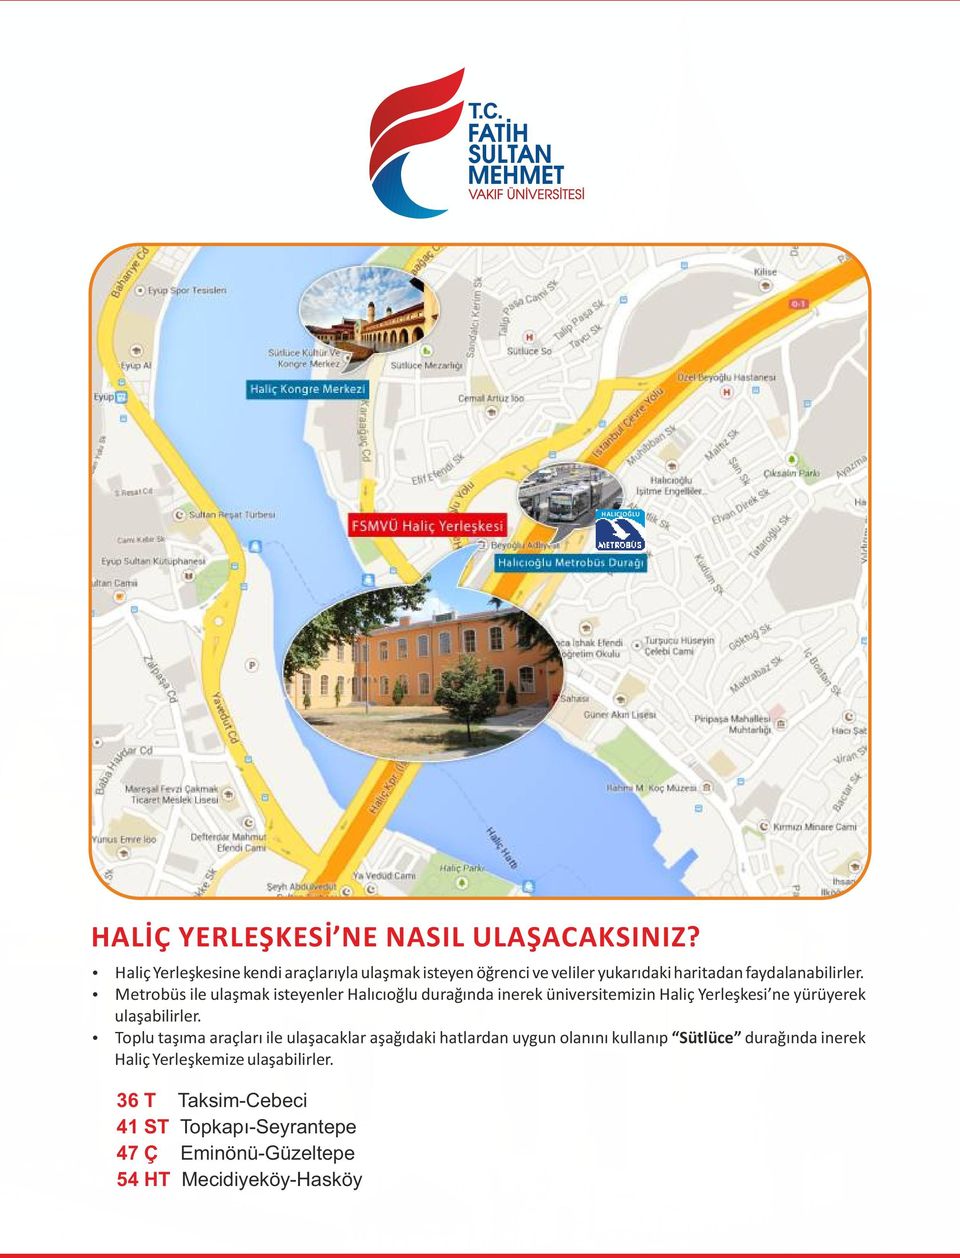 Metrobüs ile ulaşmak isteyenler Halıcıoğlu durağında inerek üniversitemizin Haliç Yerleşkesi ne yürüyerek ulaşabilirler.